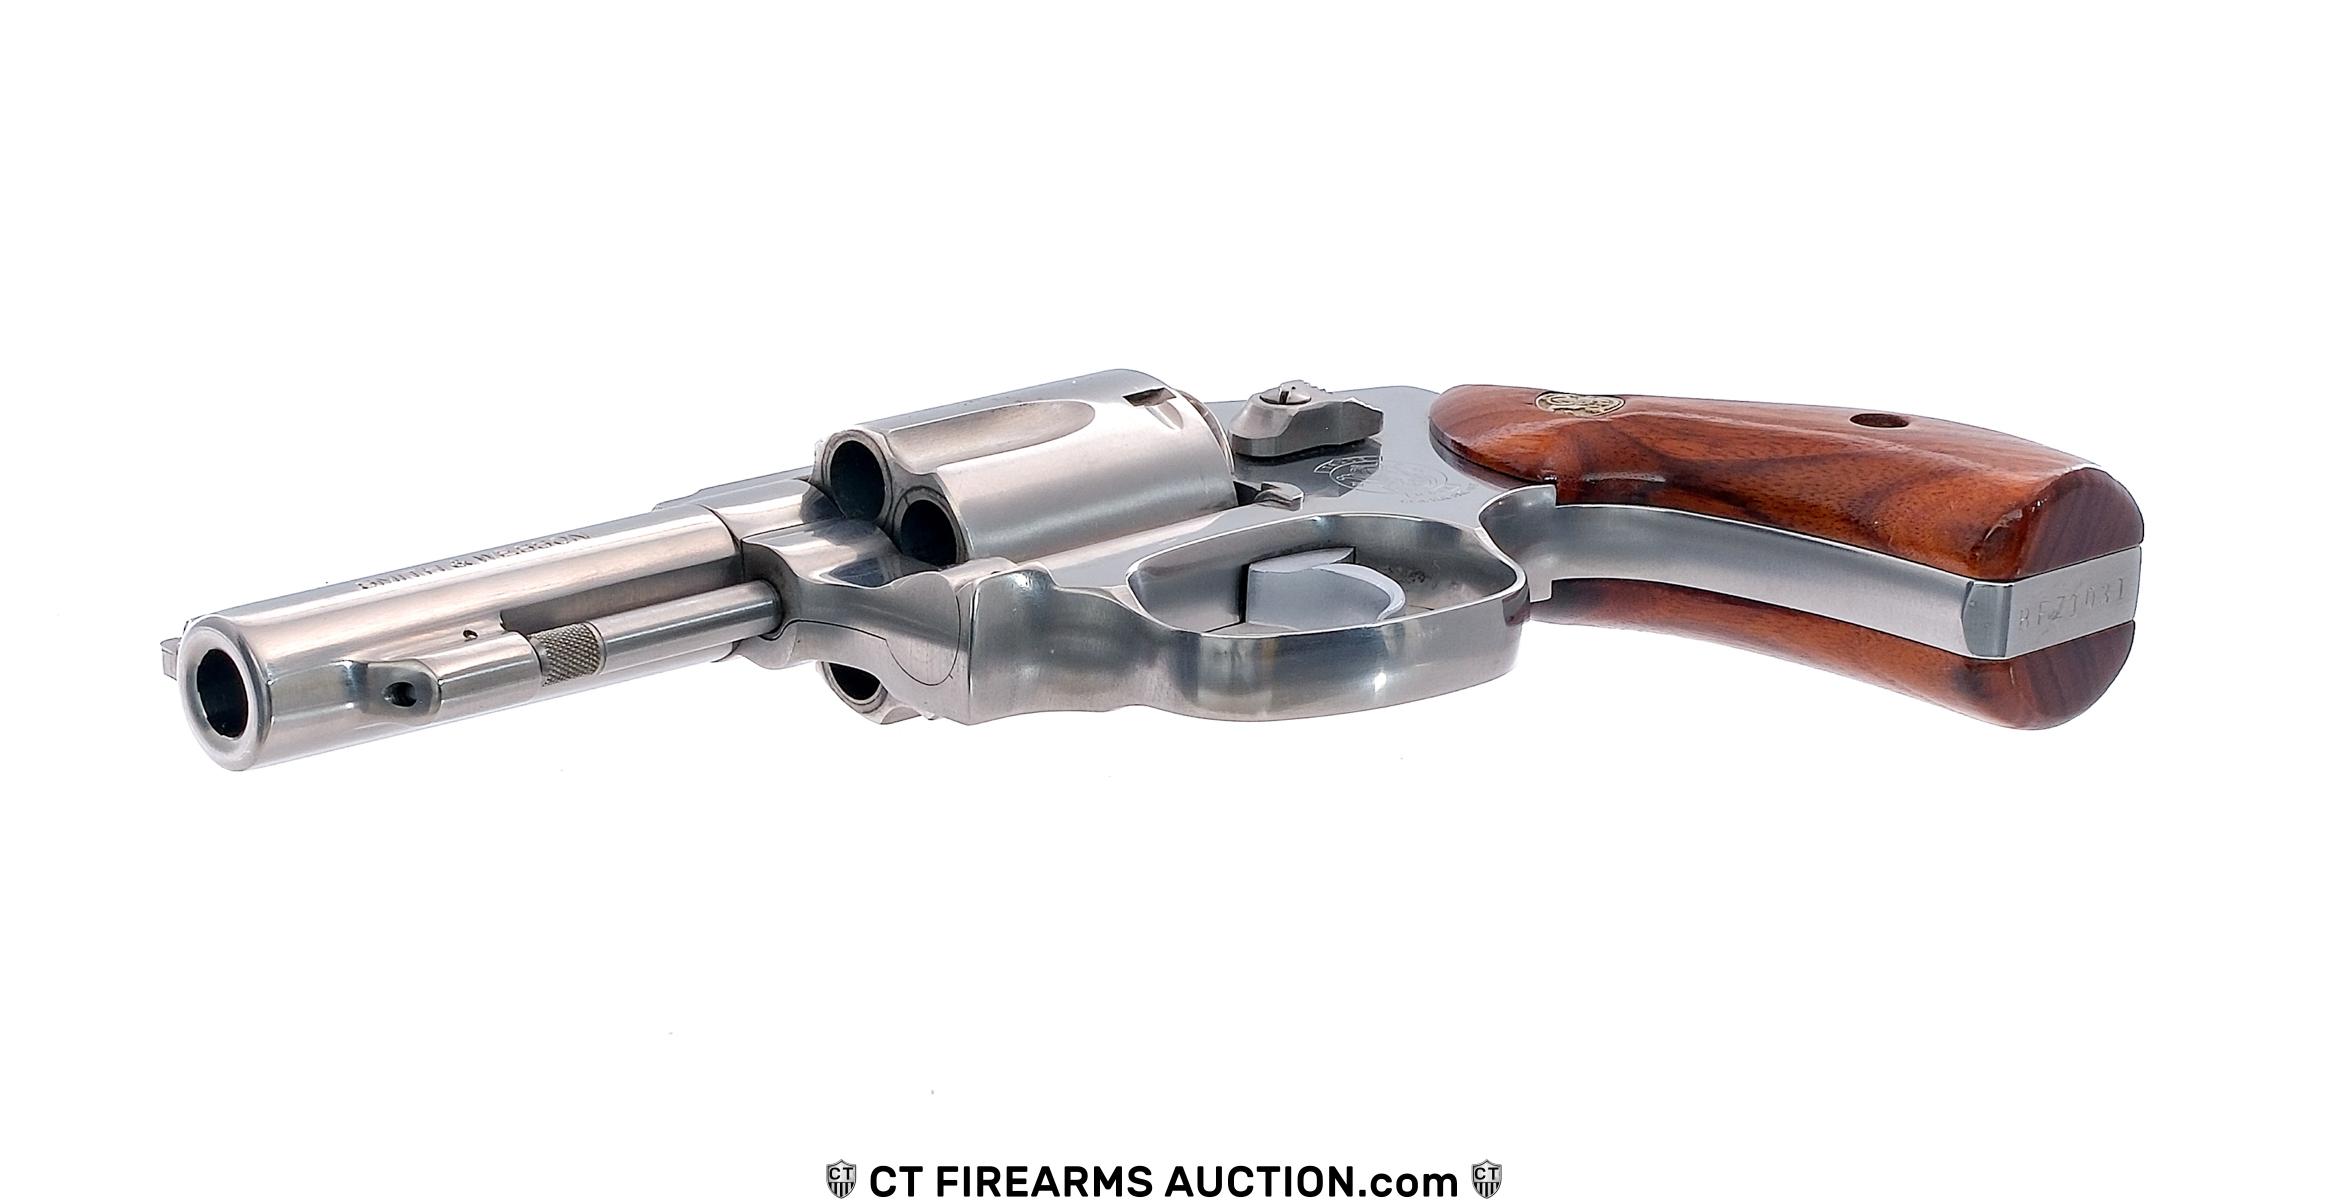 Smith & Wesson 640 .38 Spl DA Revolver